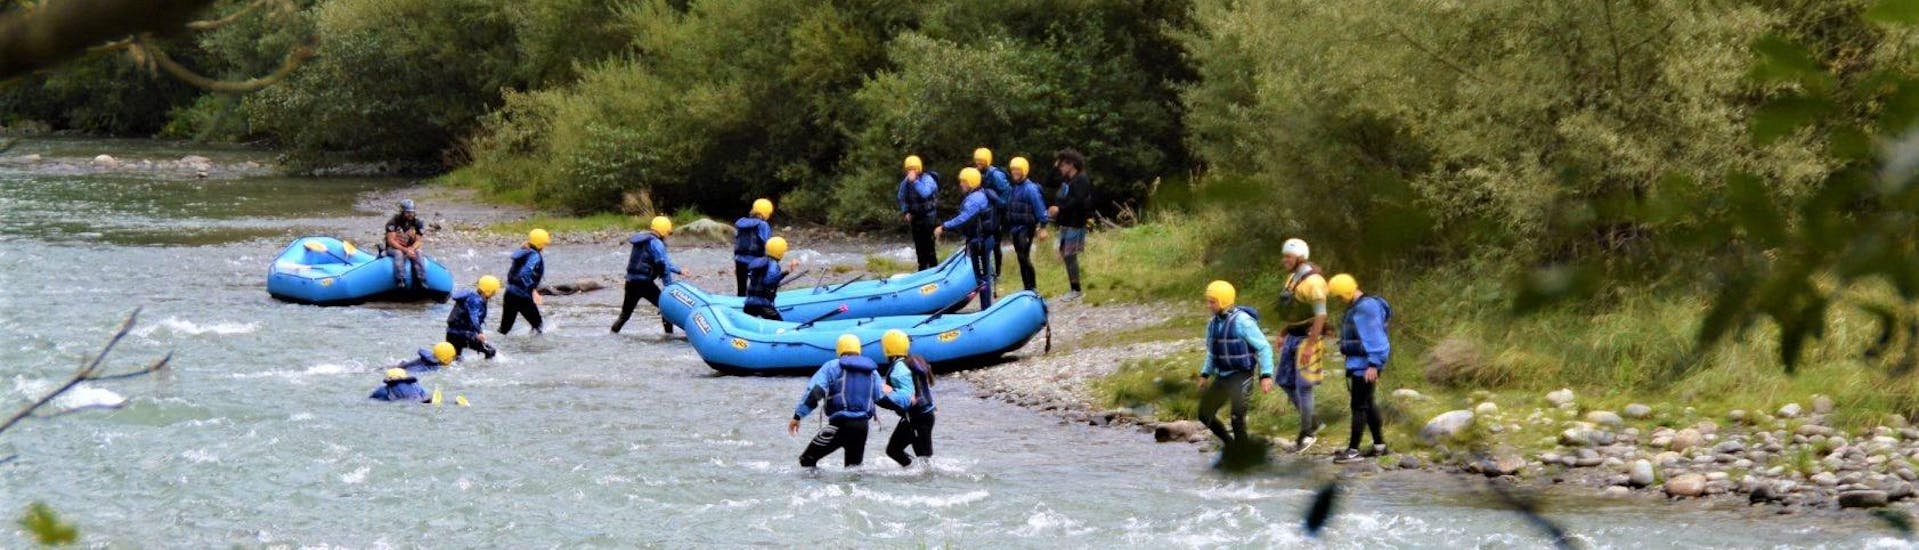 Rafting para expertos en Mezzana - Noce.